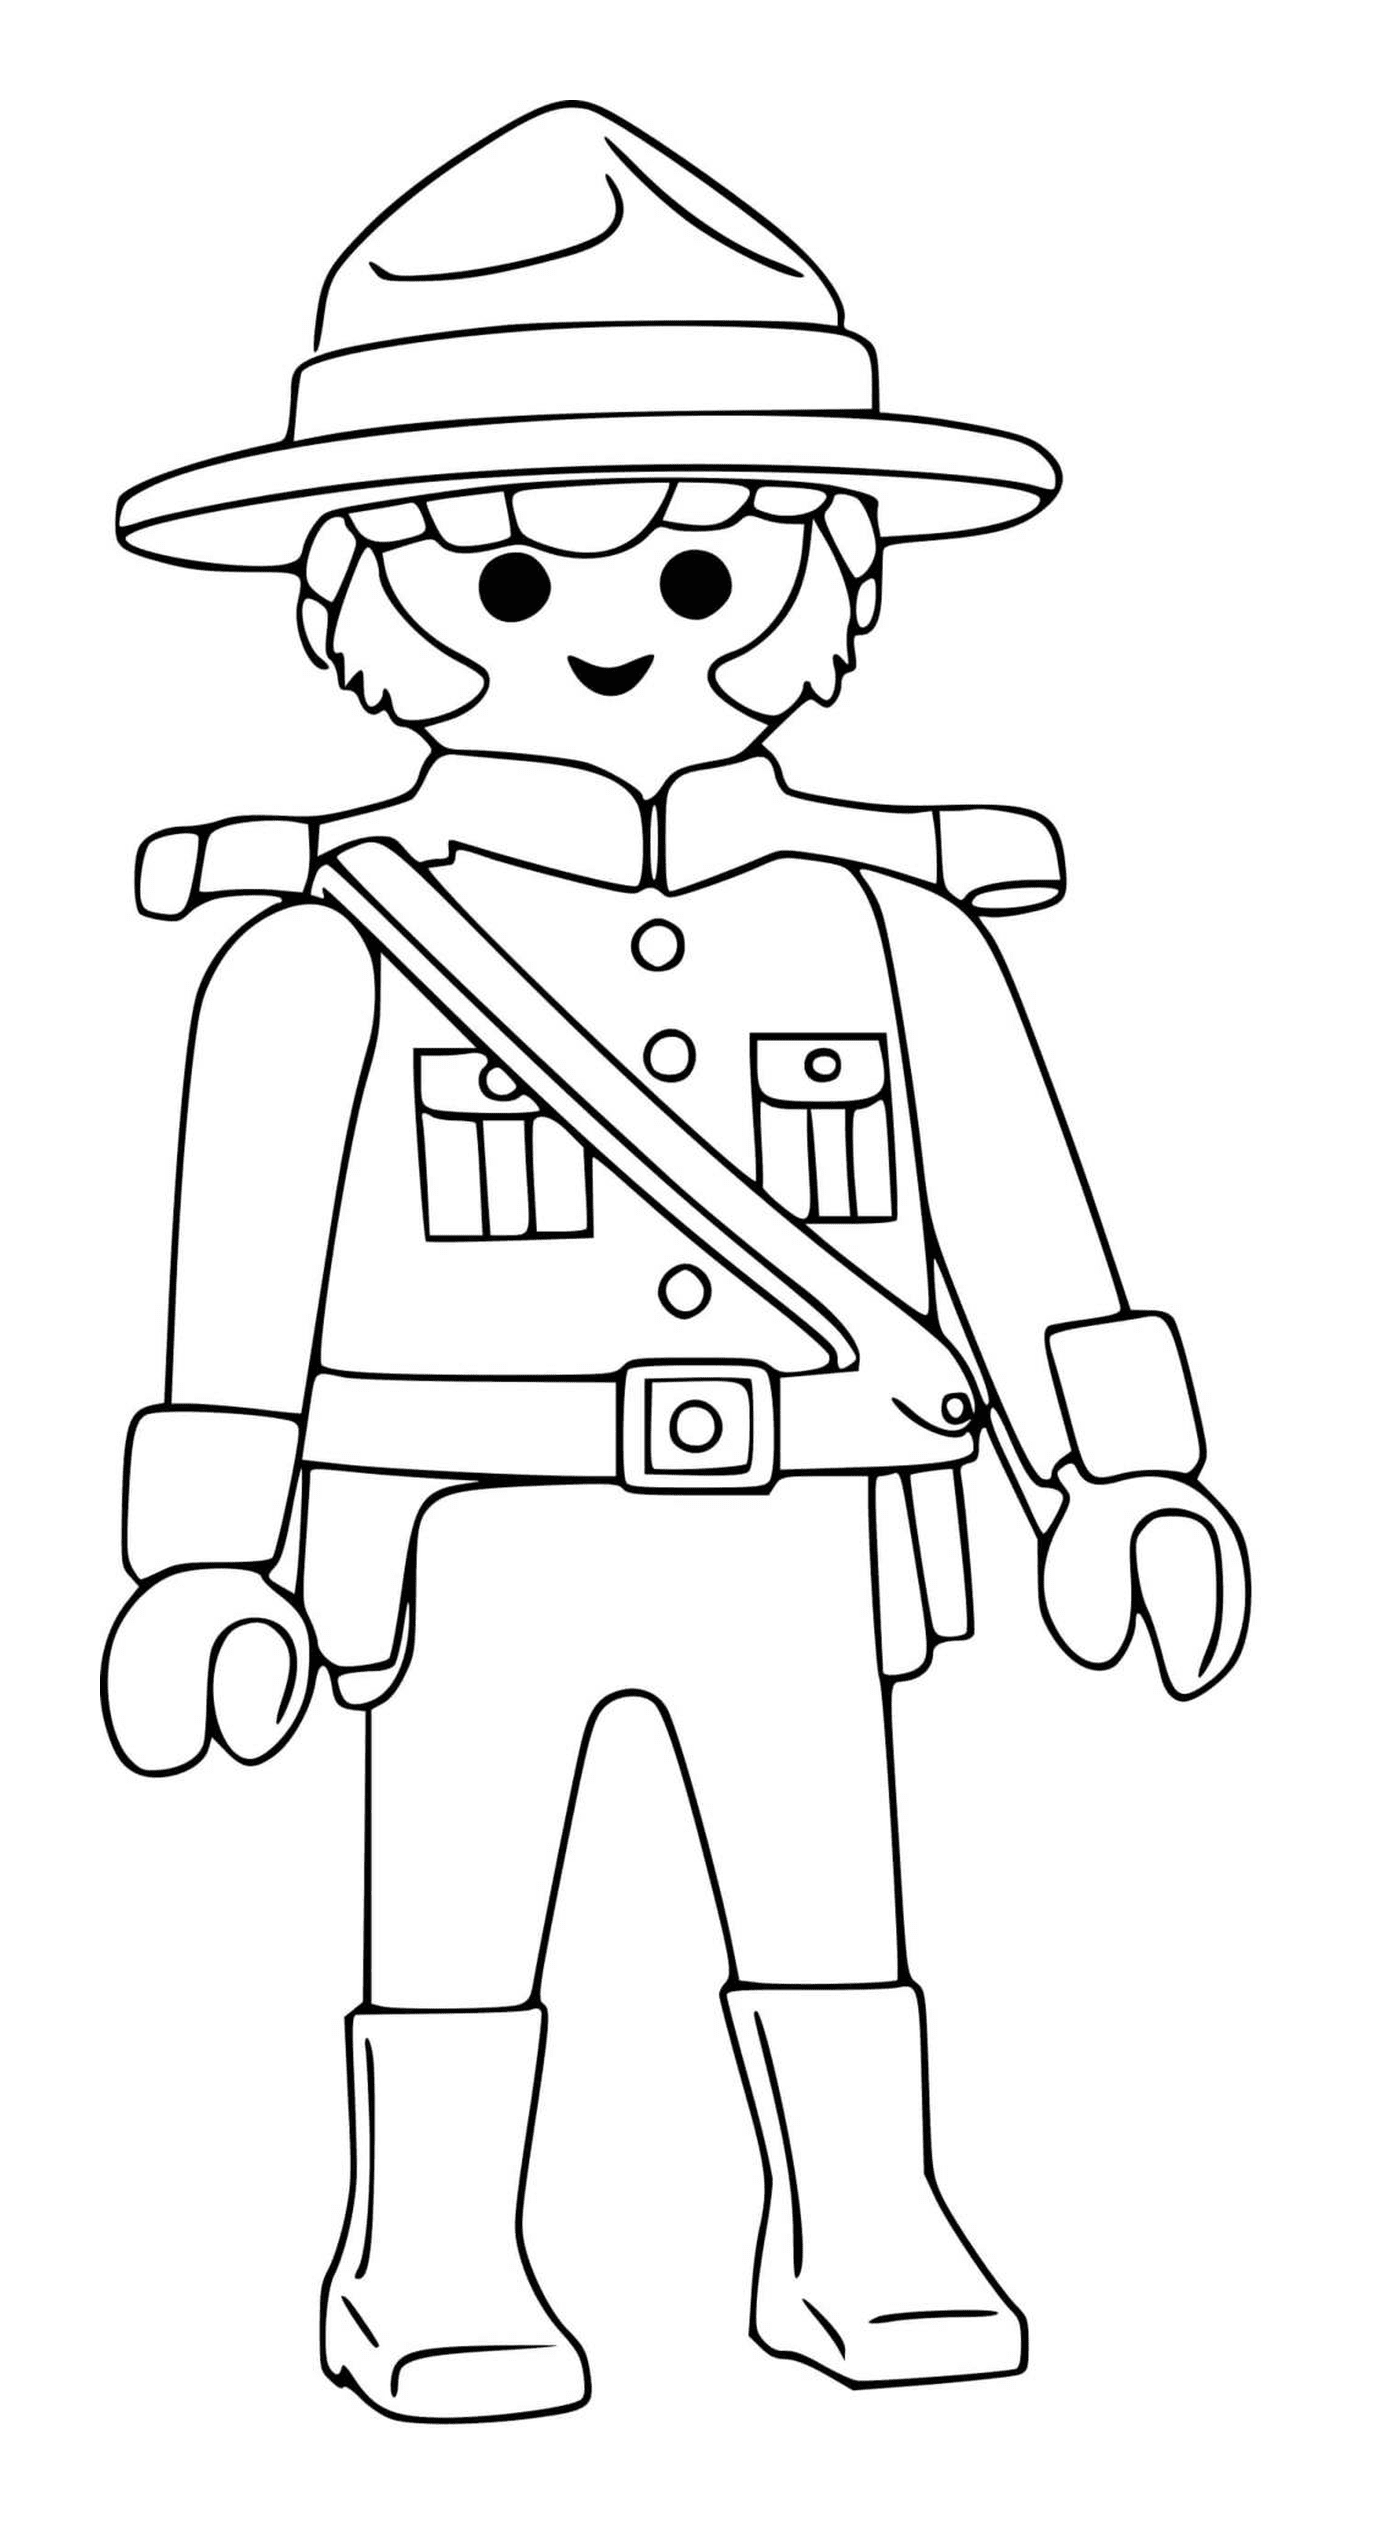  Charakter Playmobil : Kanadischer Polizist 